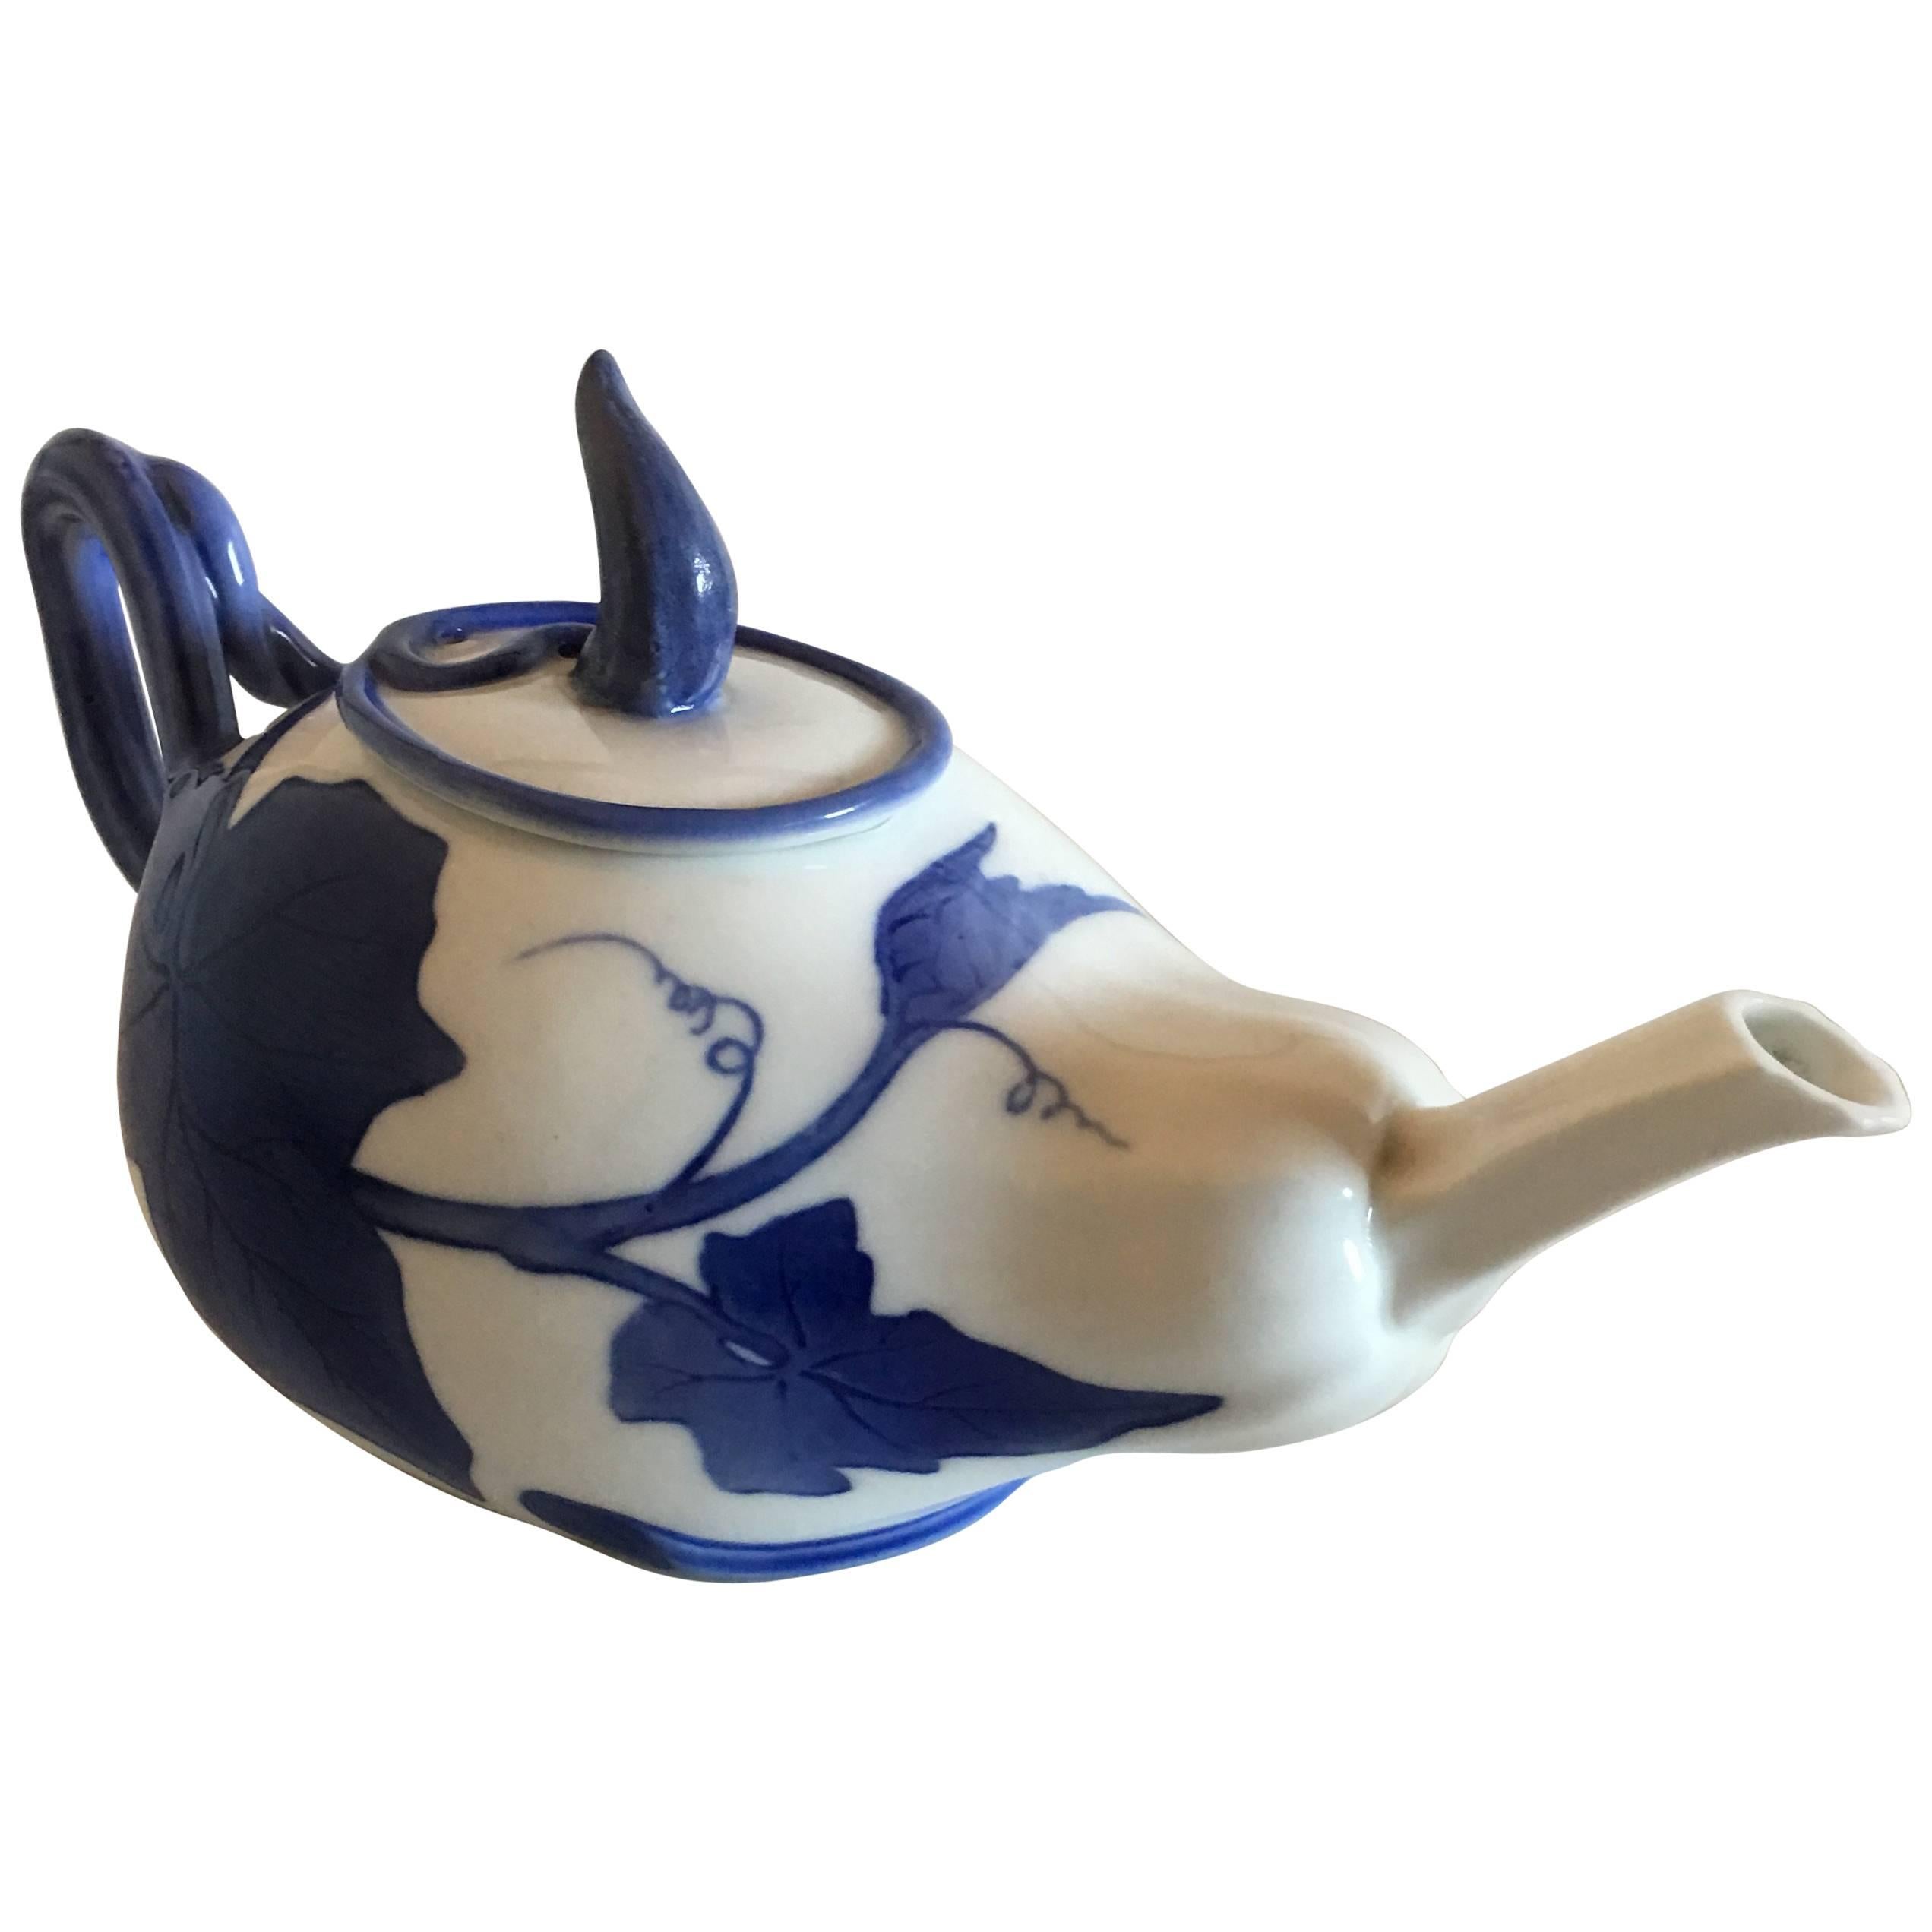 Royal Copenhagen Art Nouveau Tea Pot #506 'Dinnerware No. 4' For Sale